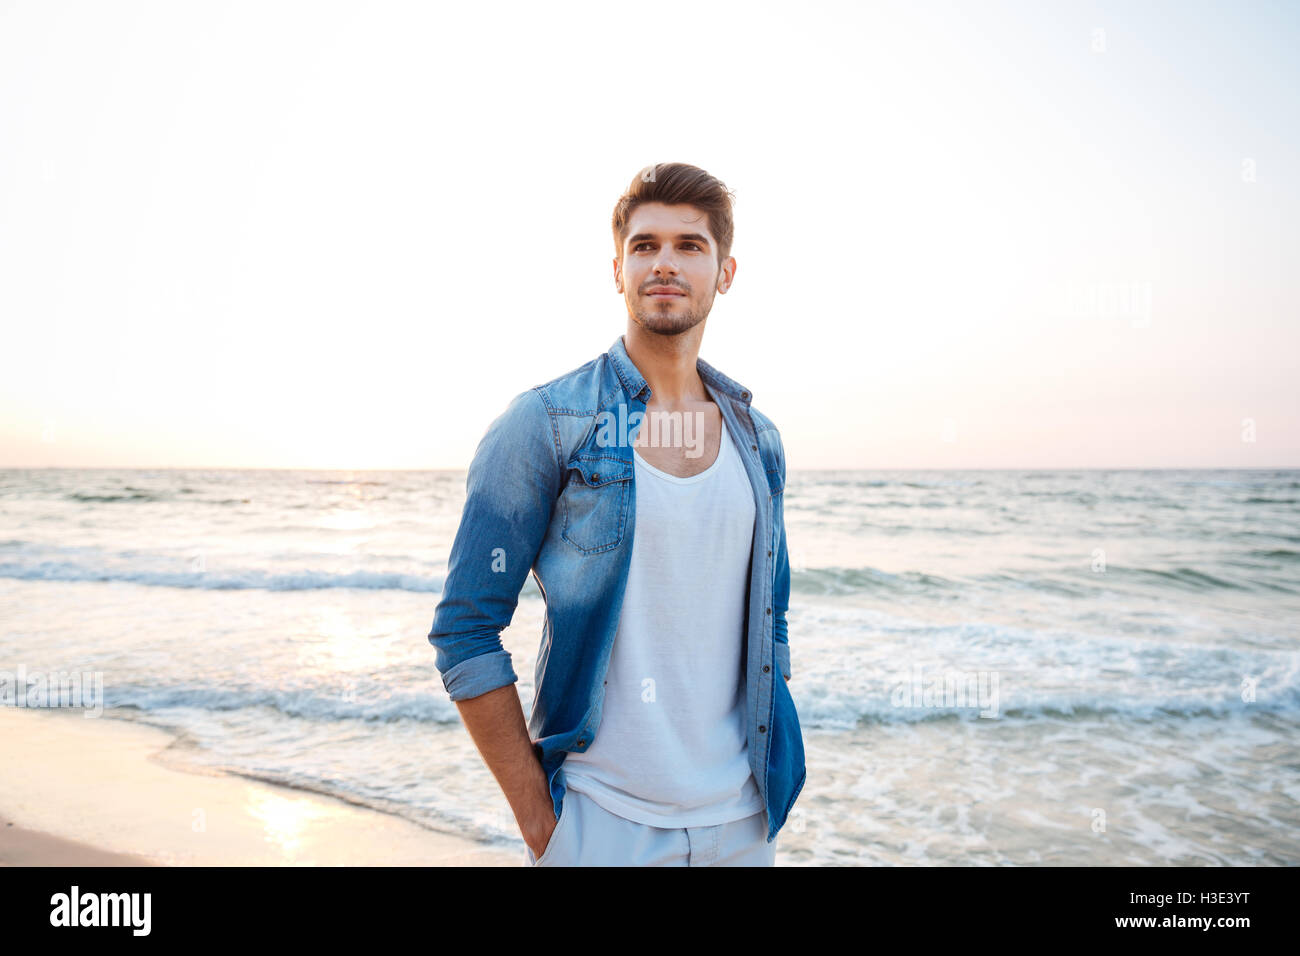 Beau jeune homme en jeans shirt debout sur la plage Banque D'Images